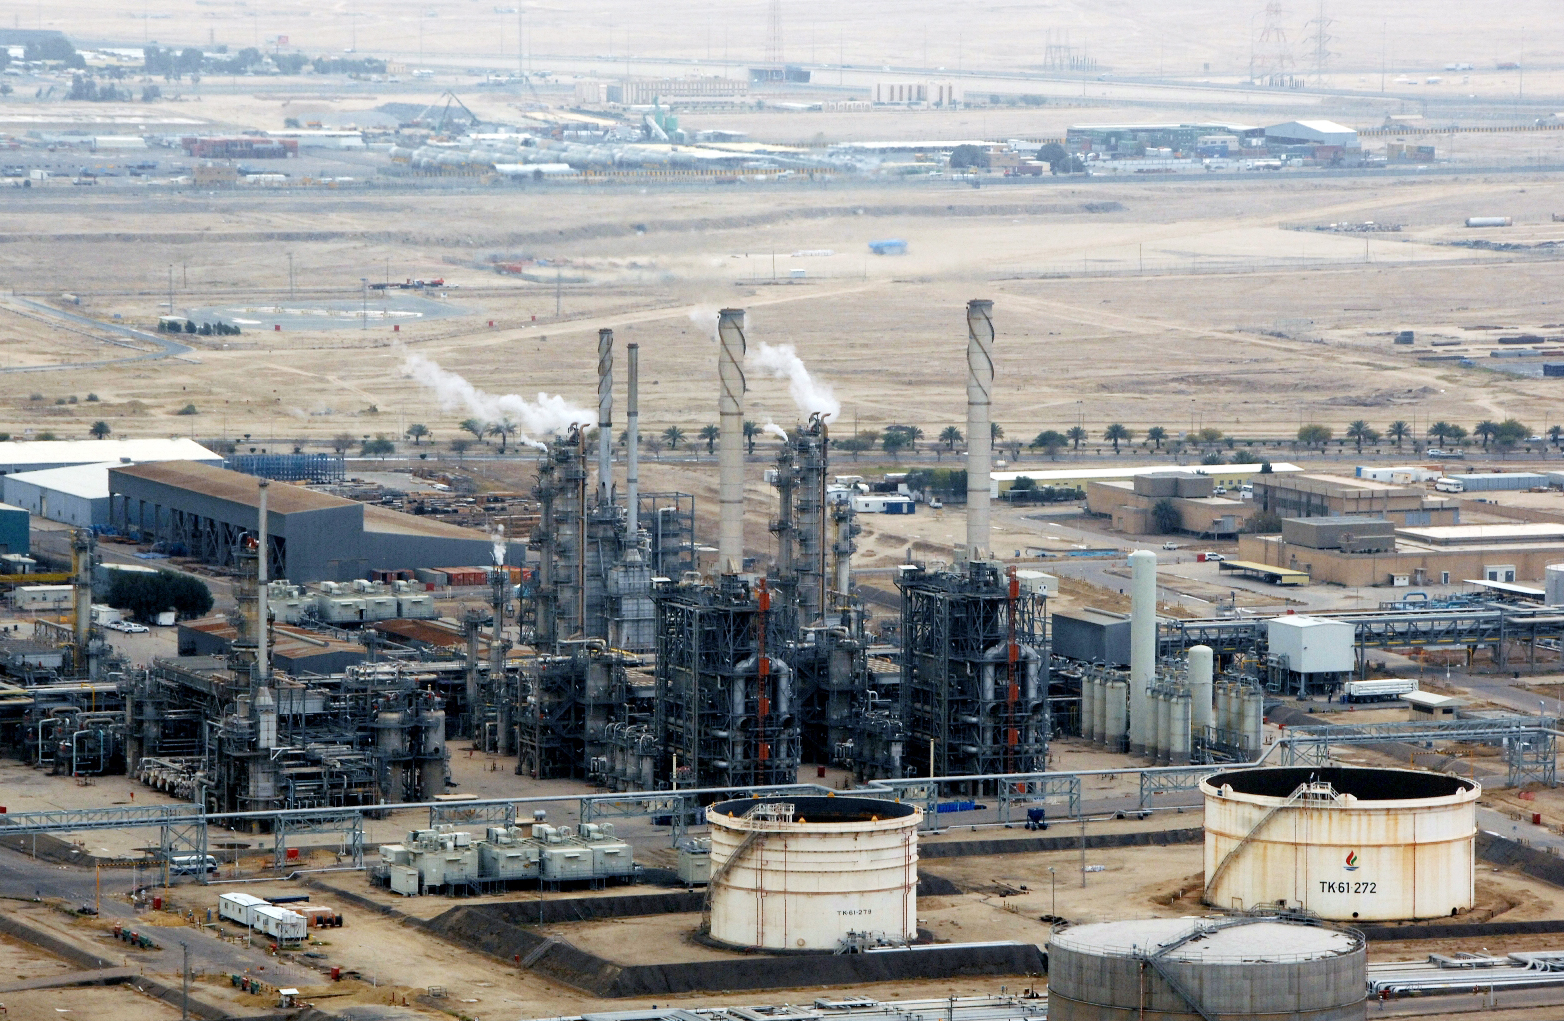 the Kuwait Petroleum Corporation (KPC